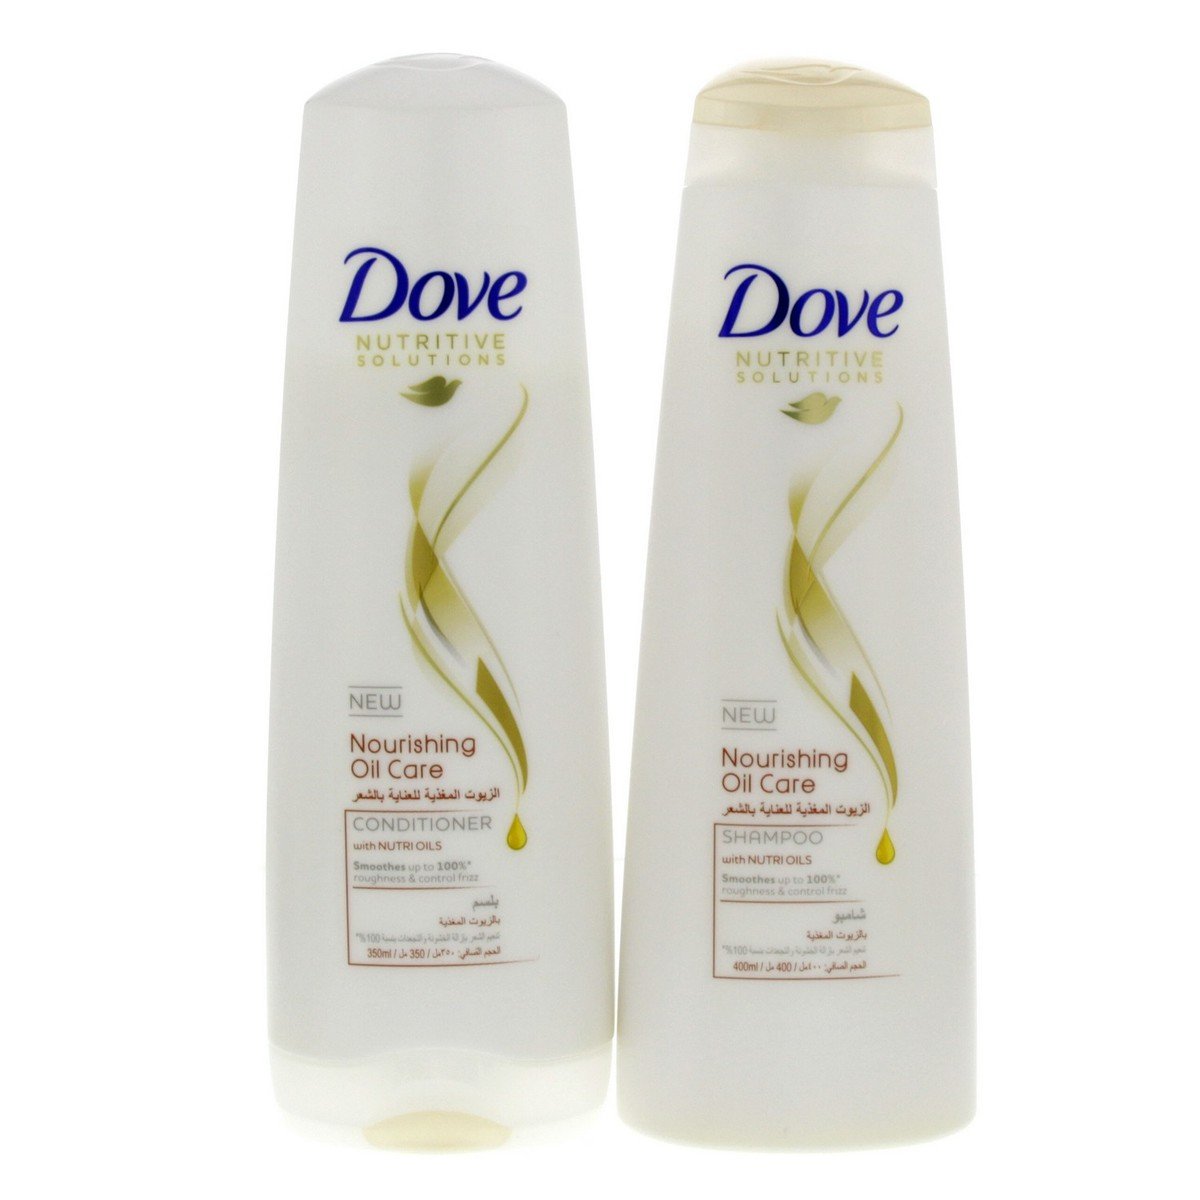 Dove Nutritive Solutions Nourishing Oil Care Conditioner 350 ml + Shampoo 400 ml